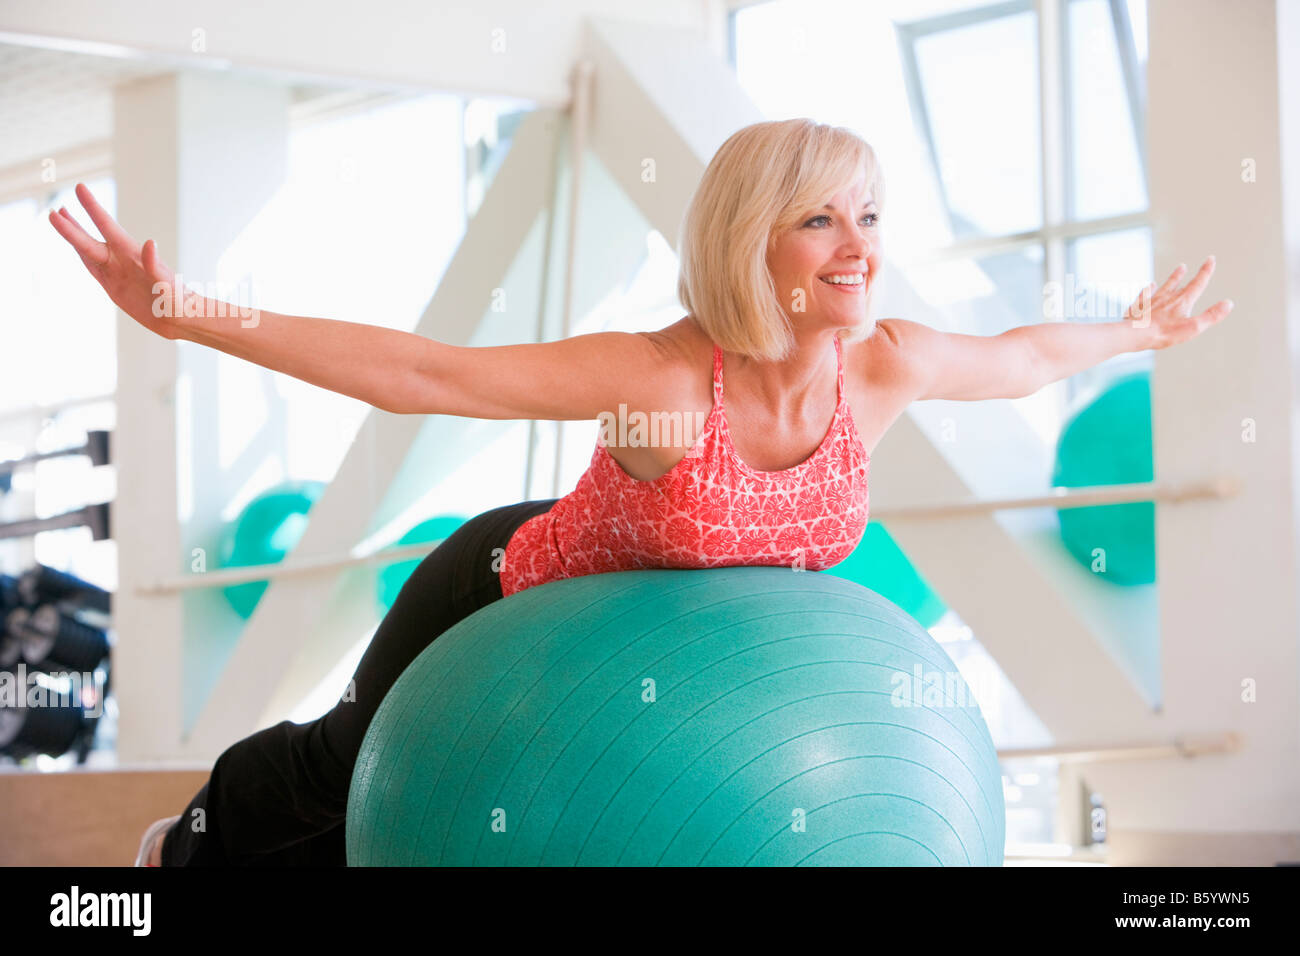 Woman Balancing On Swiss Ball Stock Photo